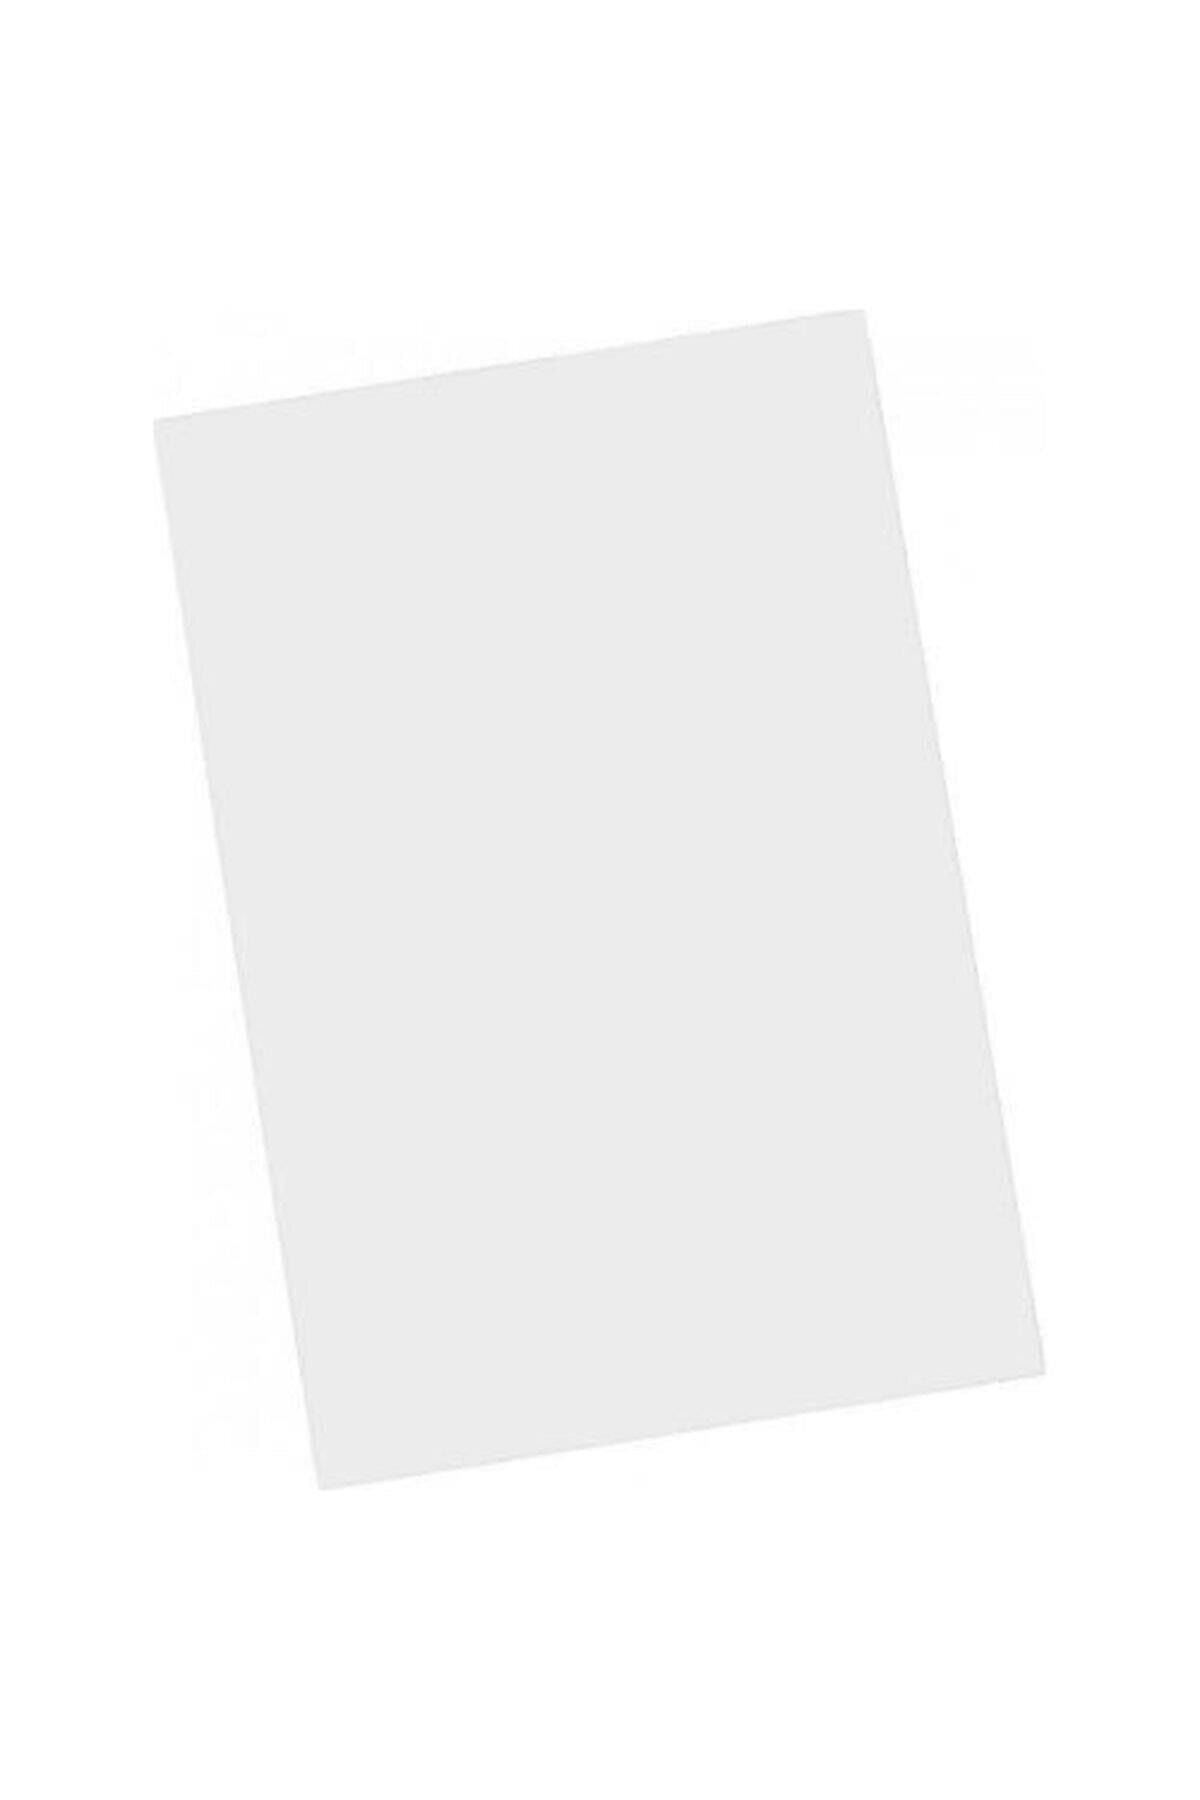 Mondi Iq Color Fon Kartonu 50x70cm 160 Gram Beyaz (100 Lü Paket)